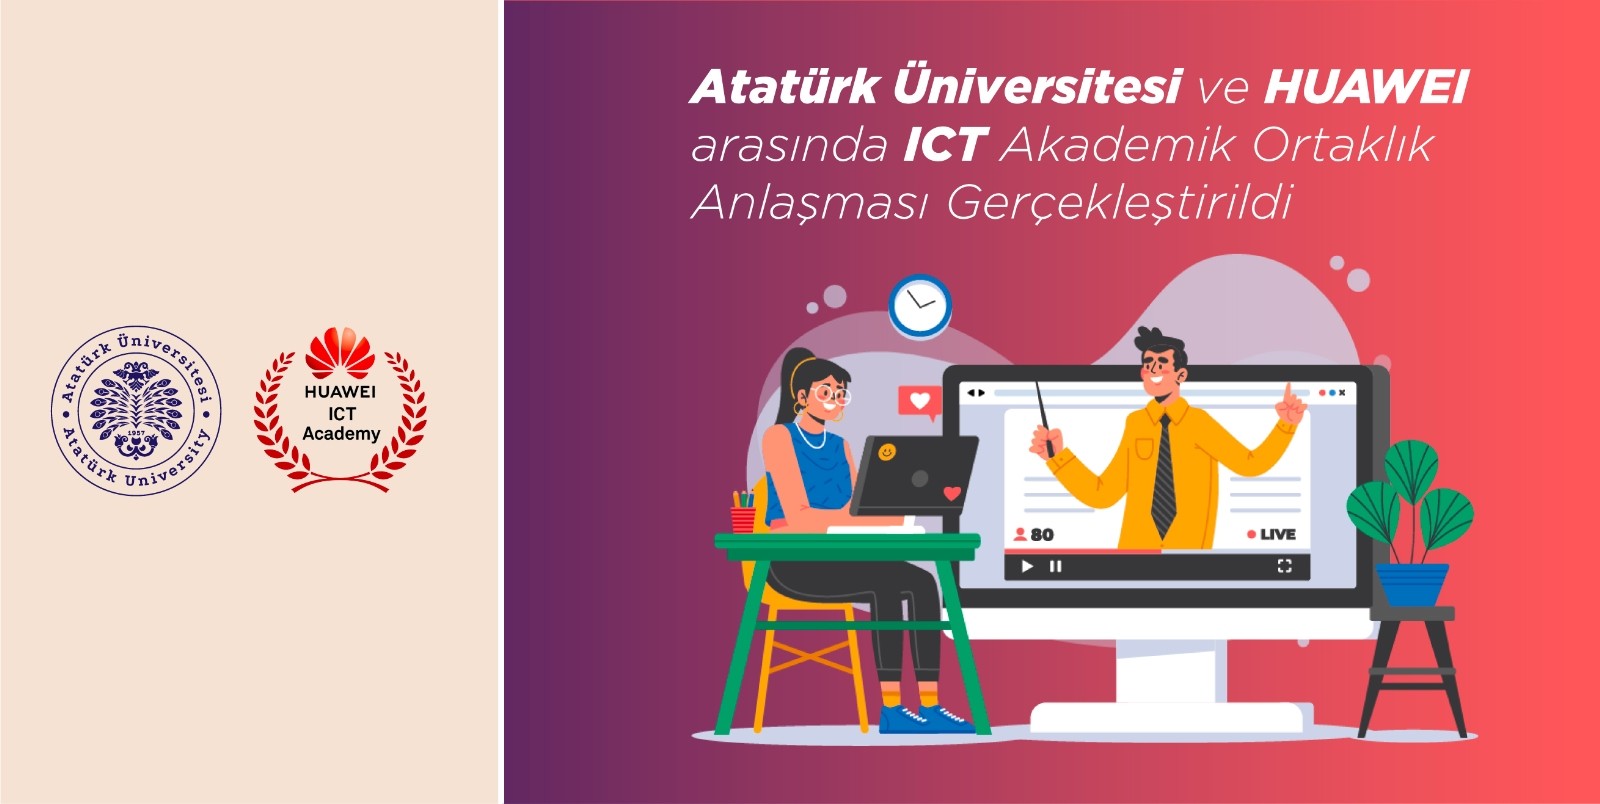 Atatürk Üniversitesi ve Huawei arasında ICT akademik ortaklık anlaşması yapıldı